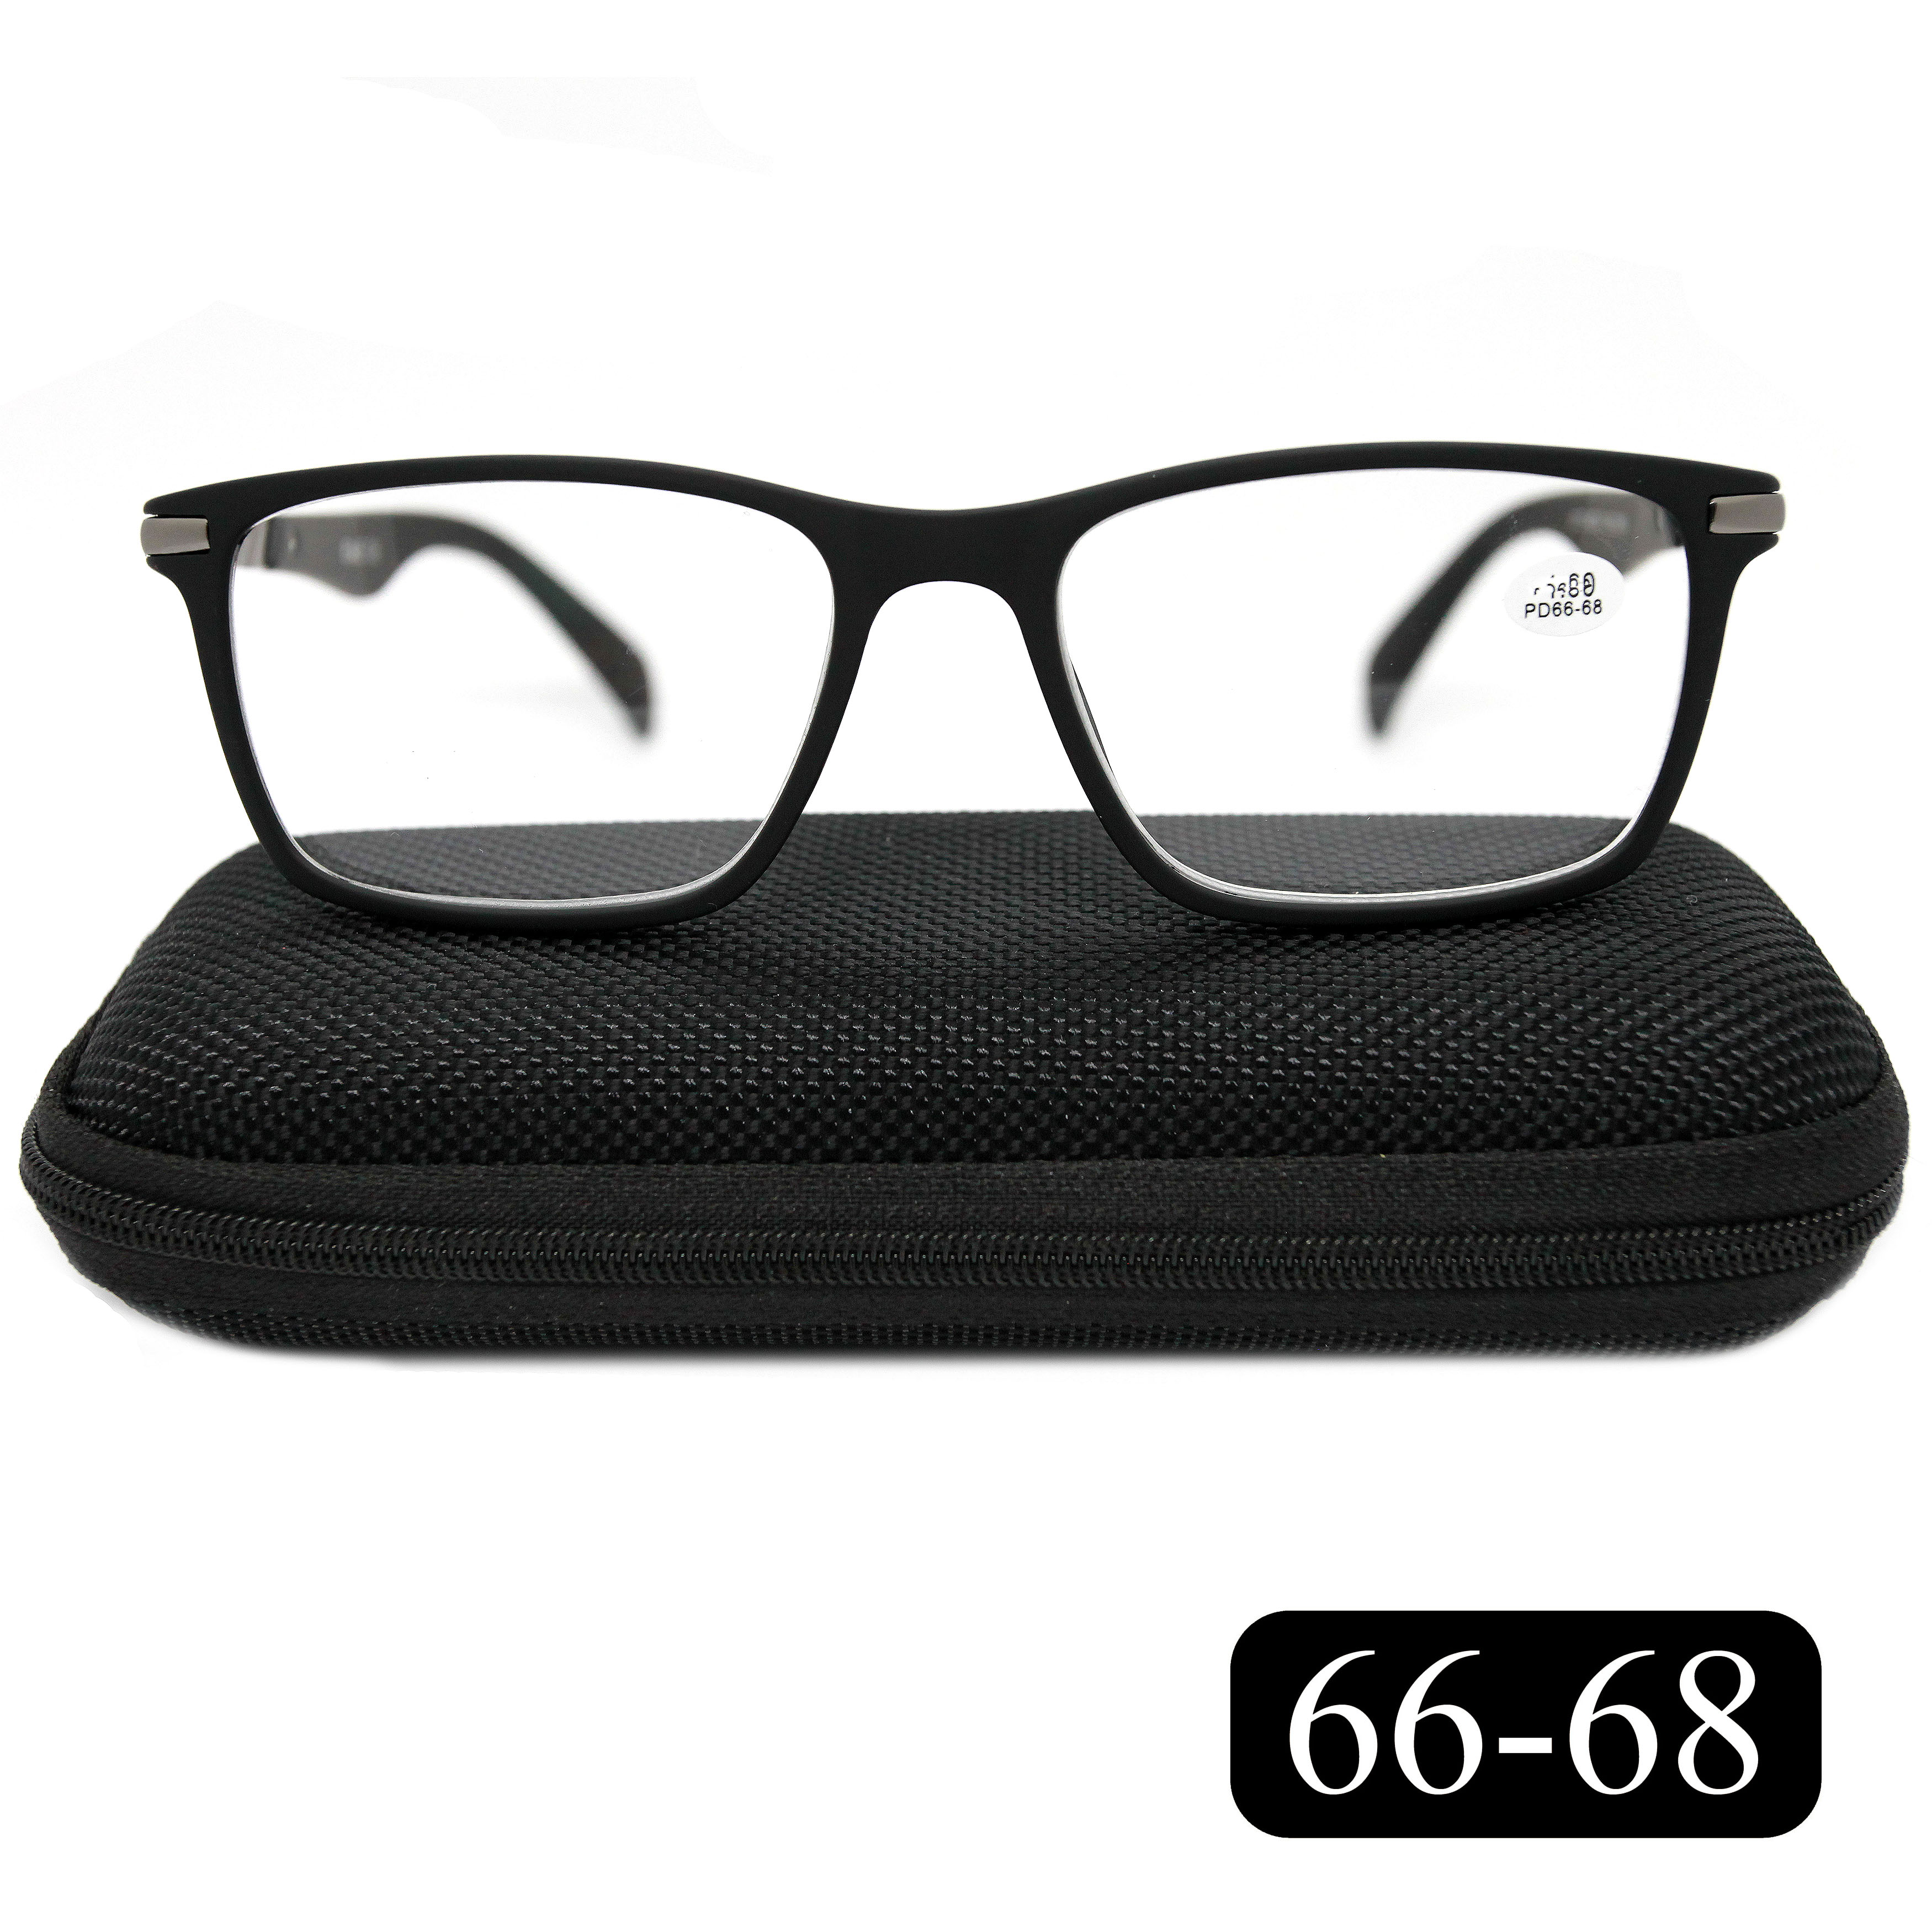 Готовые очки для зрения EAE 2177 -2.75, c футляром, цвет черный, РЦ 66-68